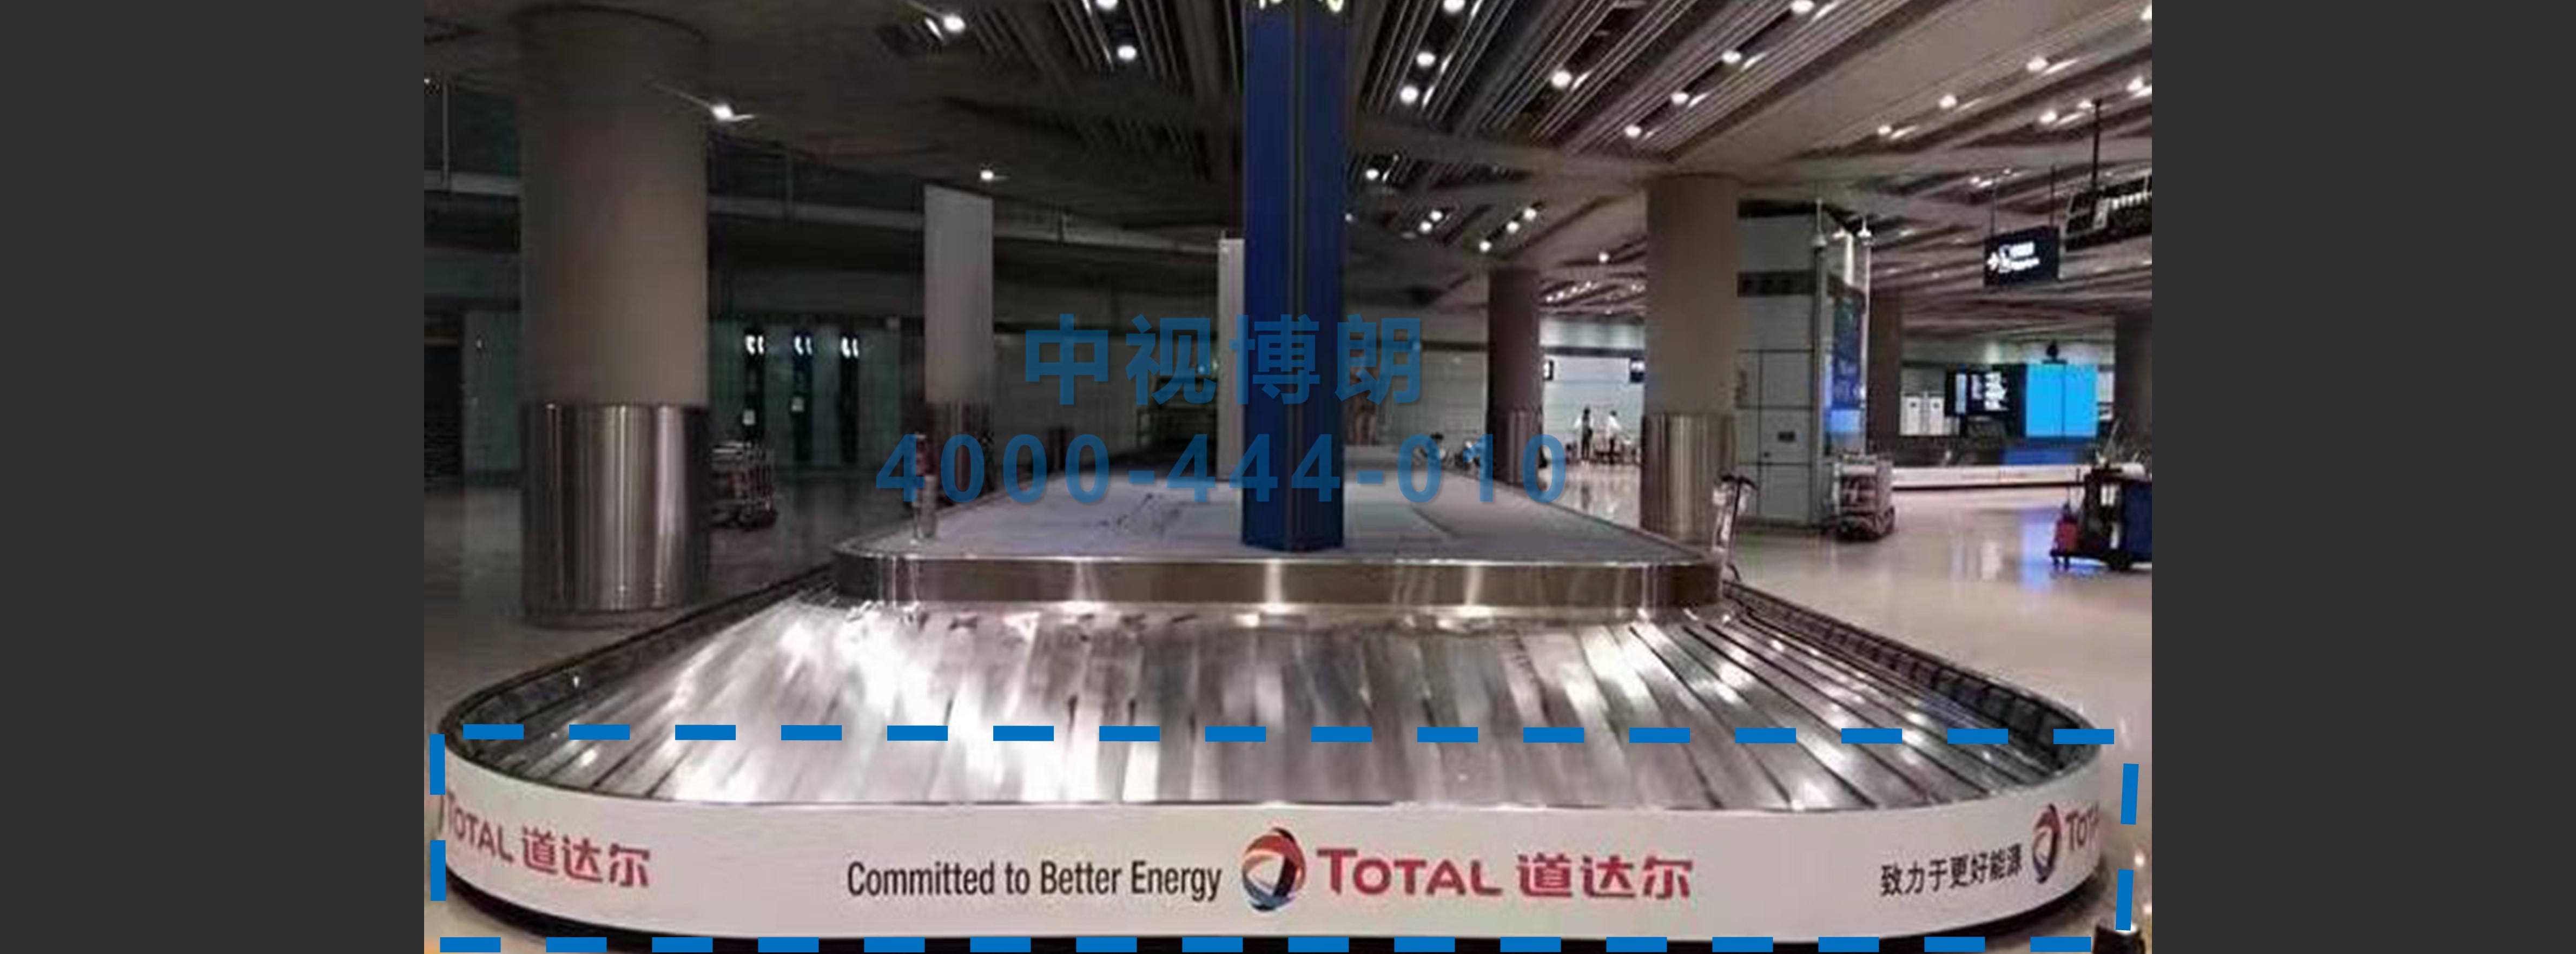 北京首都机场广告-T3到达行李厅联排贴膜套装